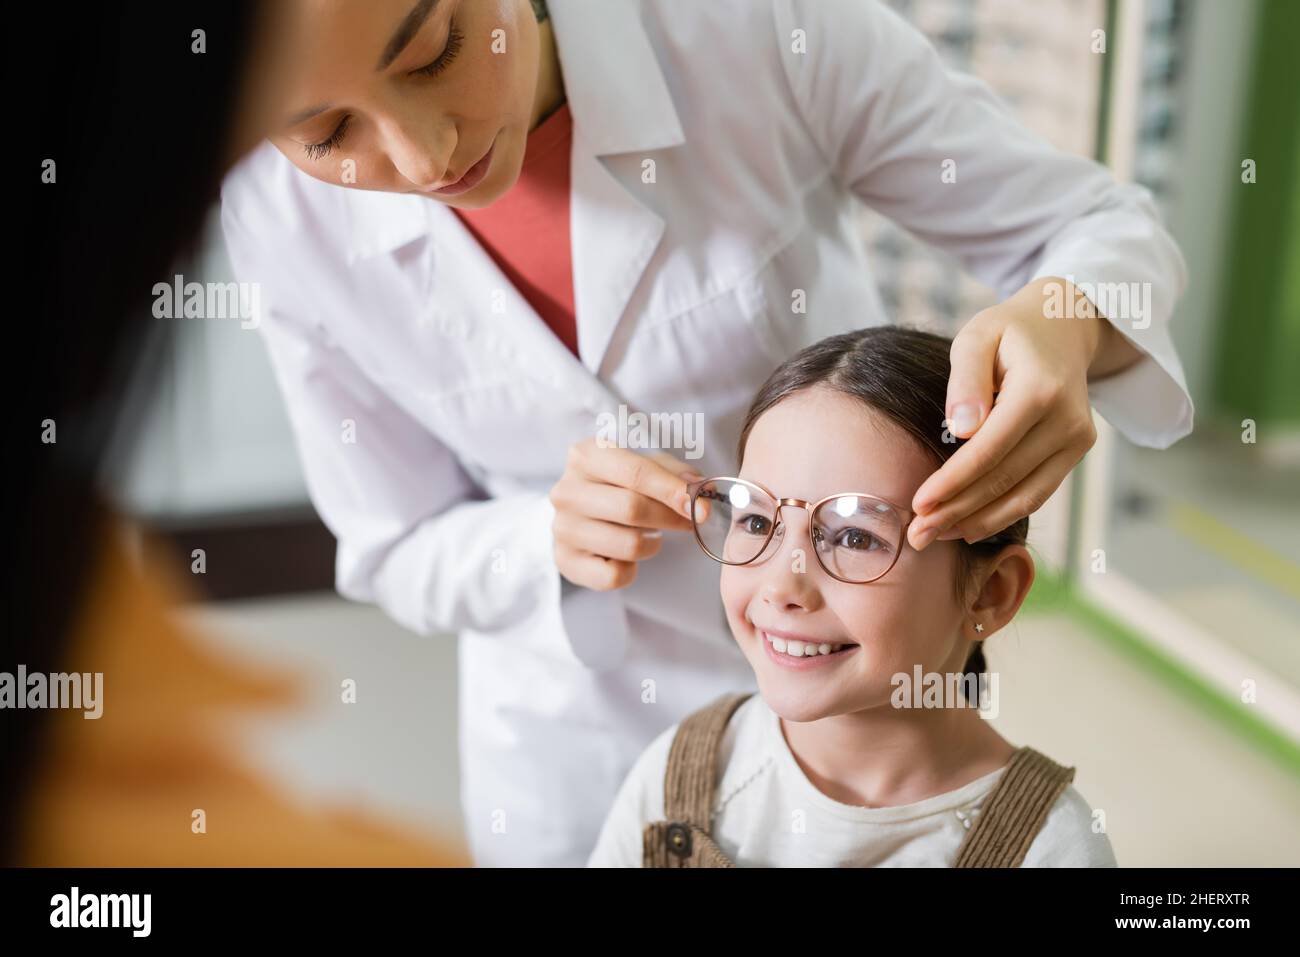 oftalmologo cercando occhiali sulla ragazza sorridente vicino mom sfocato in negozio di ottica Foto Stock